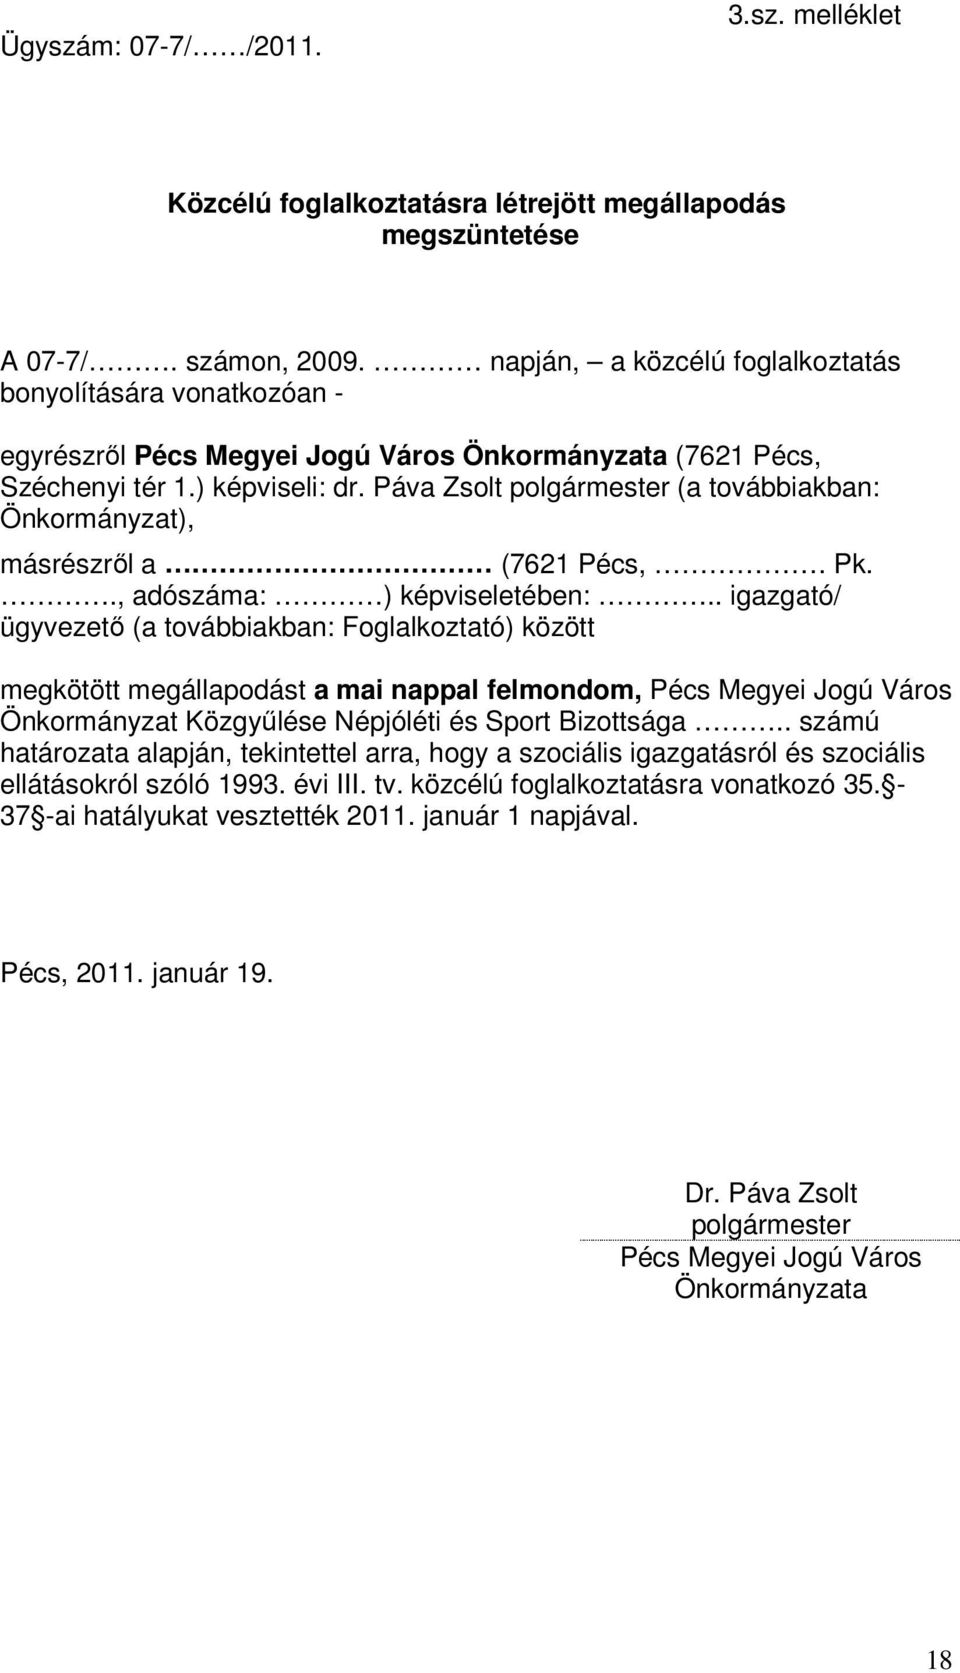 Páva Zsolt polgármester (a továbbiakban: Önkormányzat), másrészrıl a (7621 Pécs,. Pk.., adószáma: ) képviseletében:.